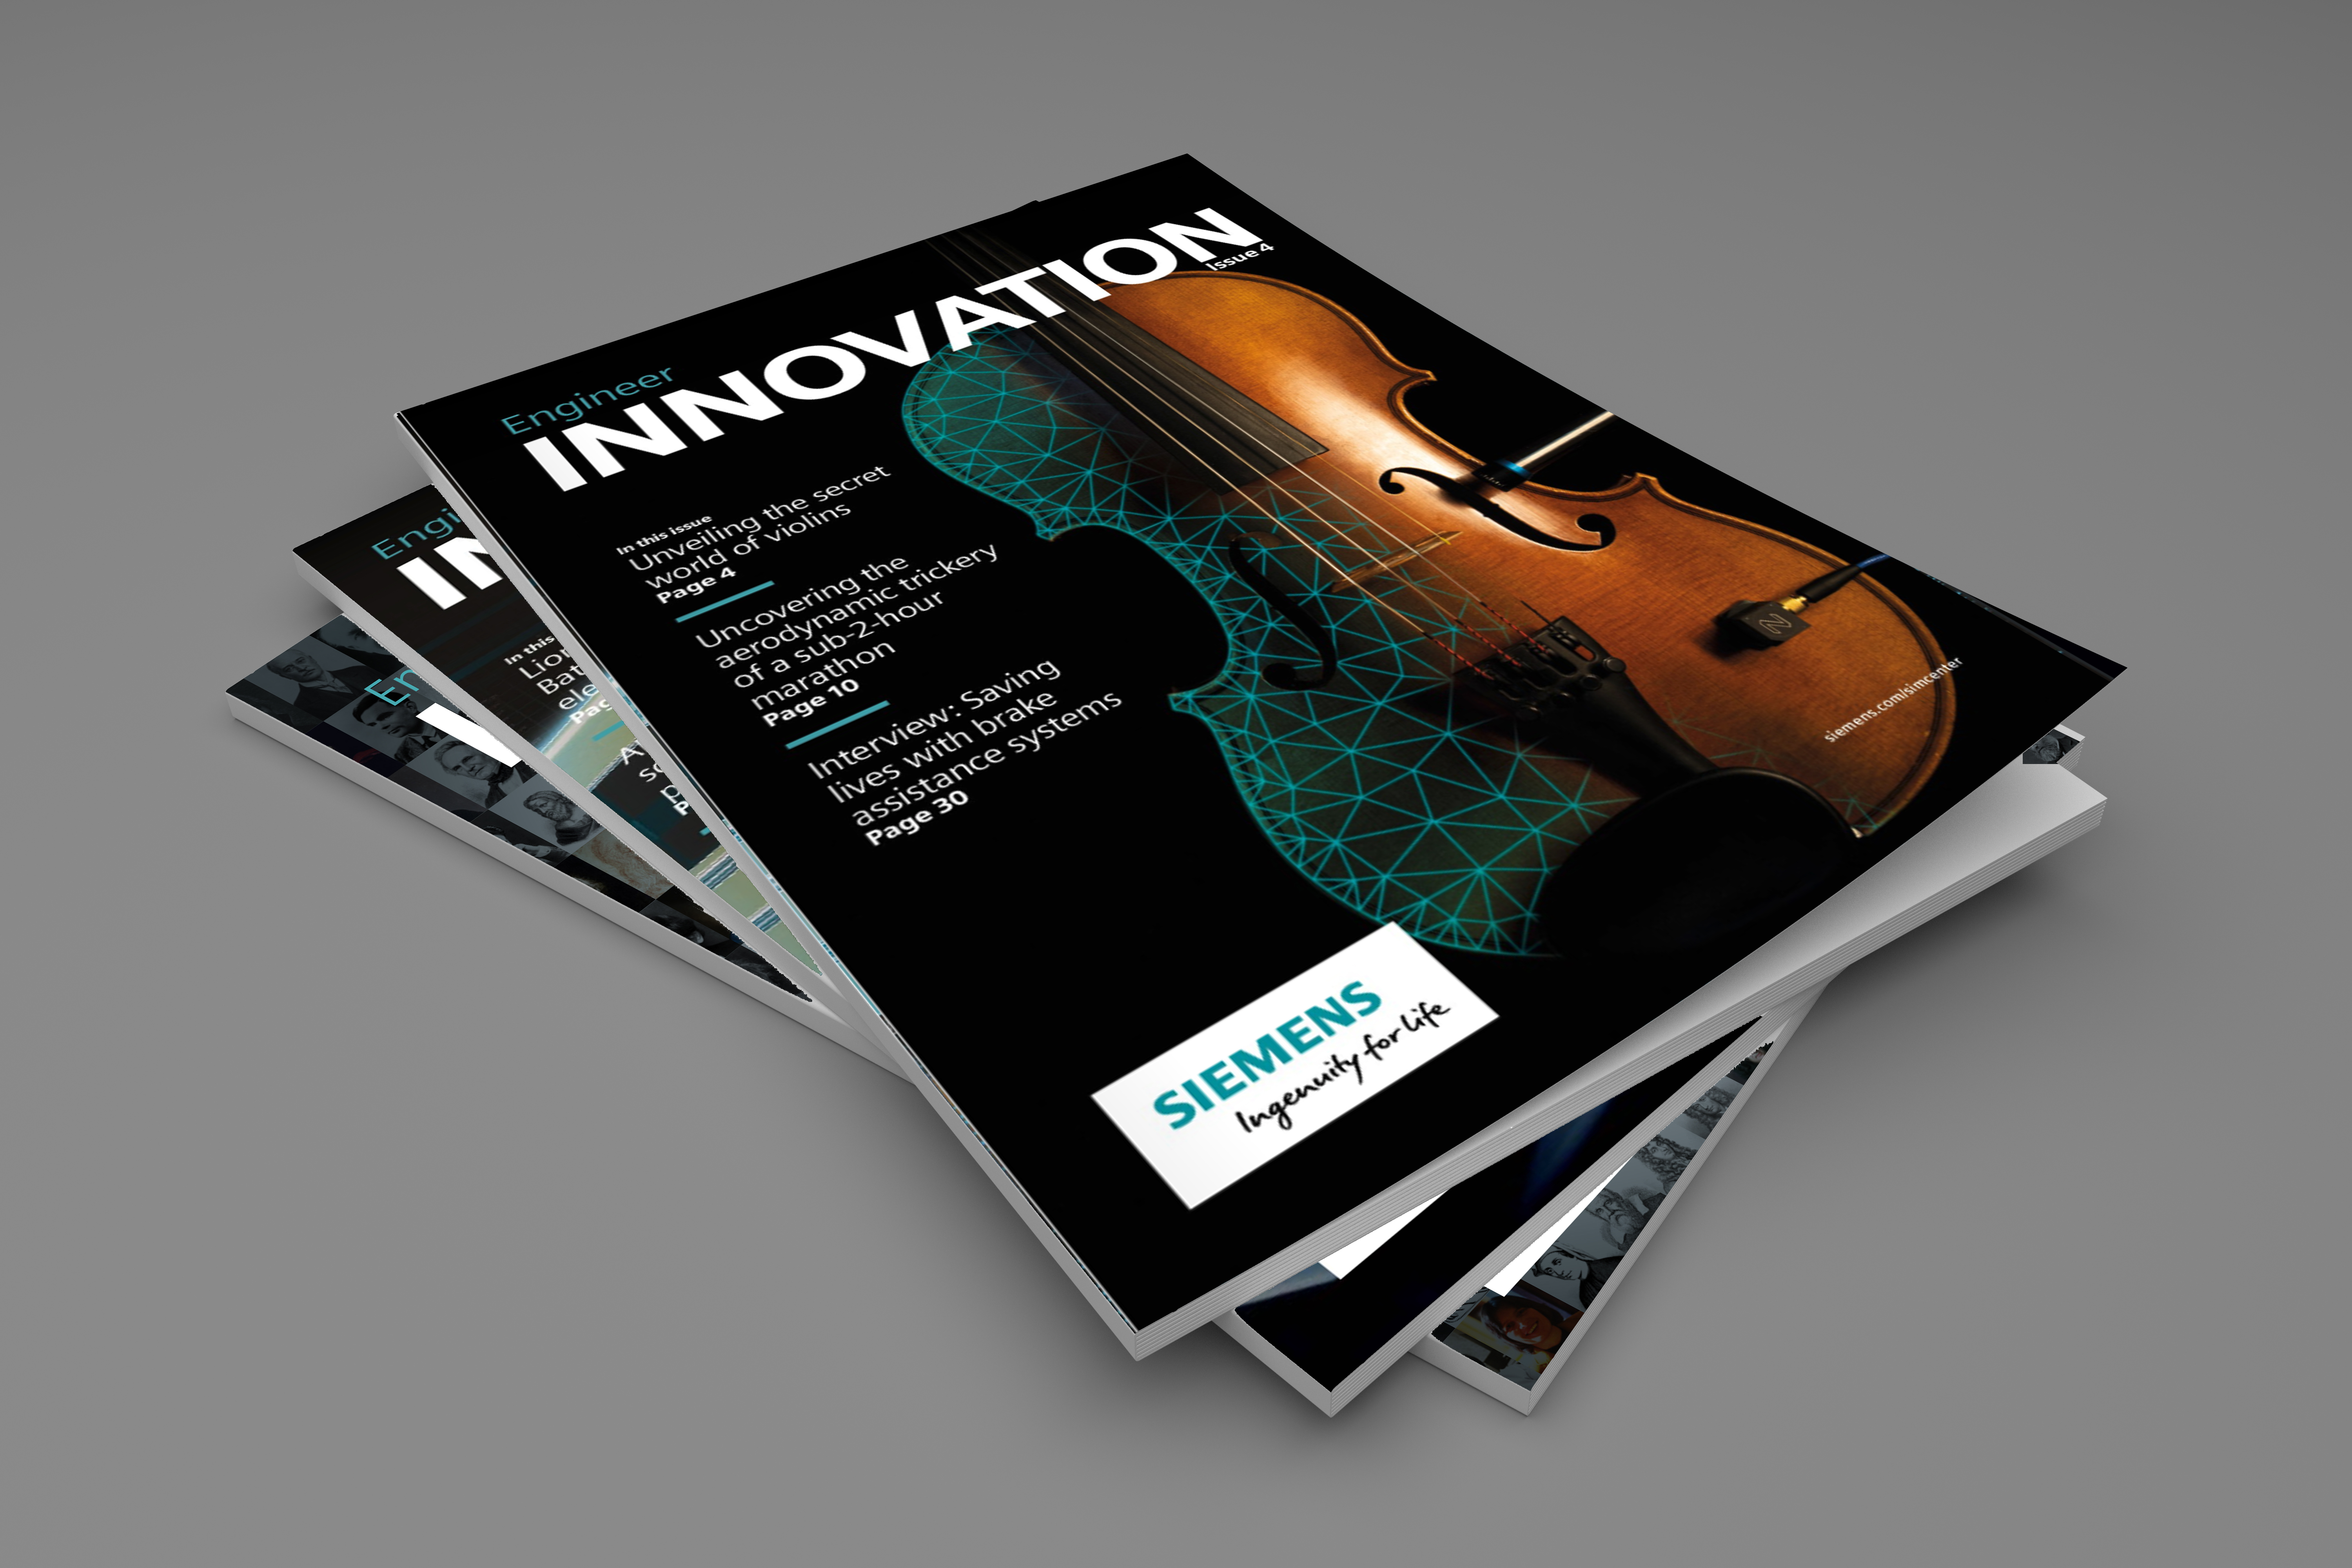 Engineering Innovation magazine